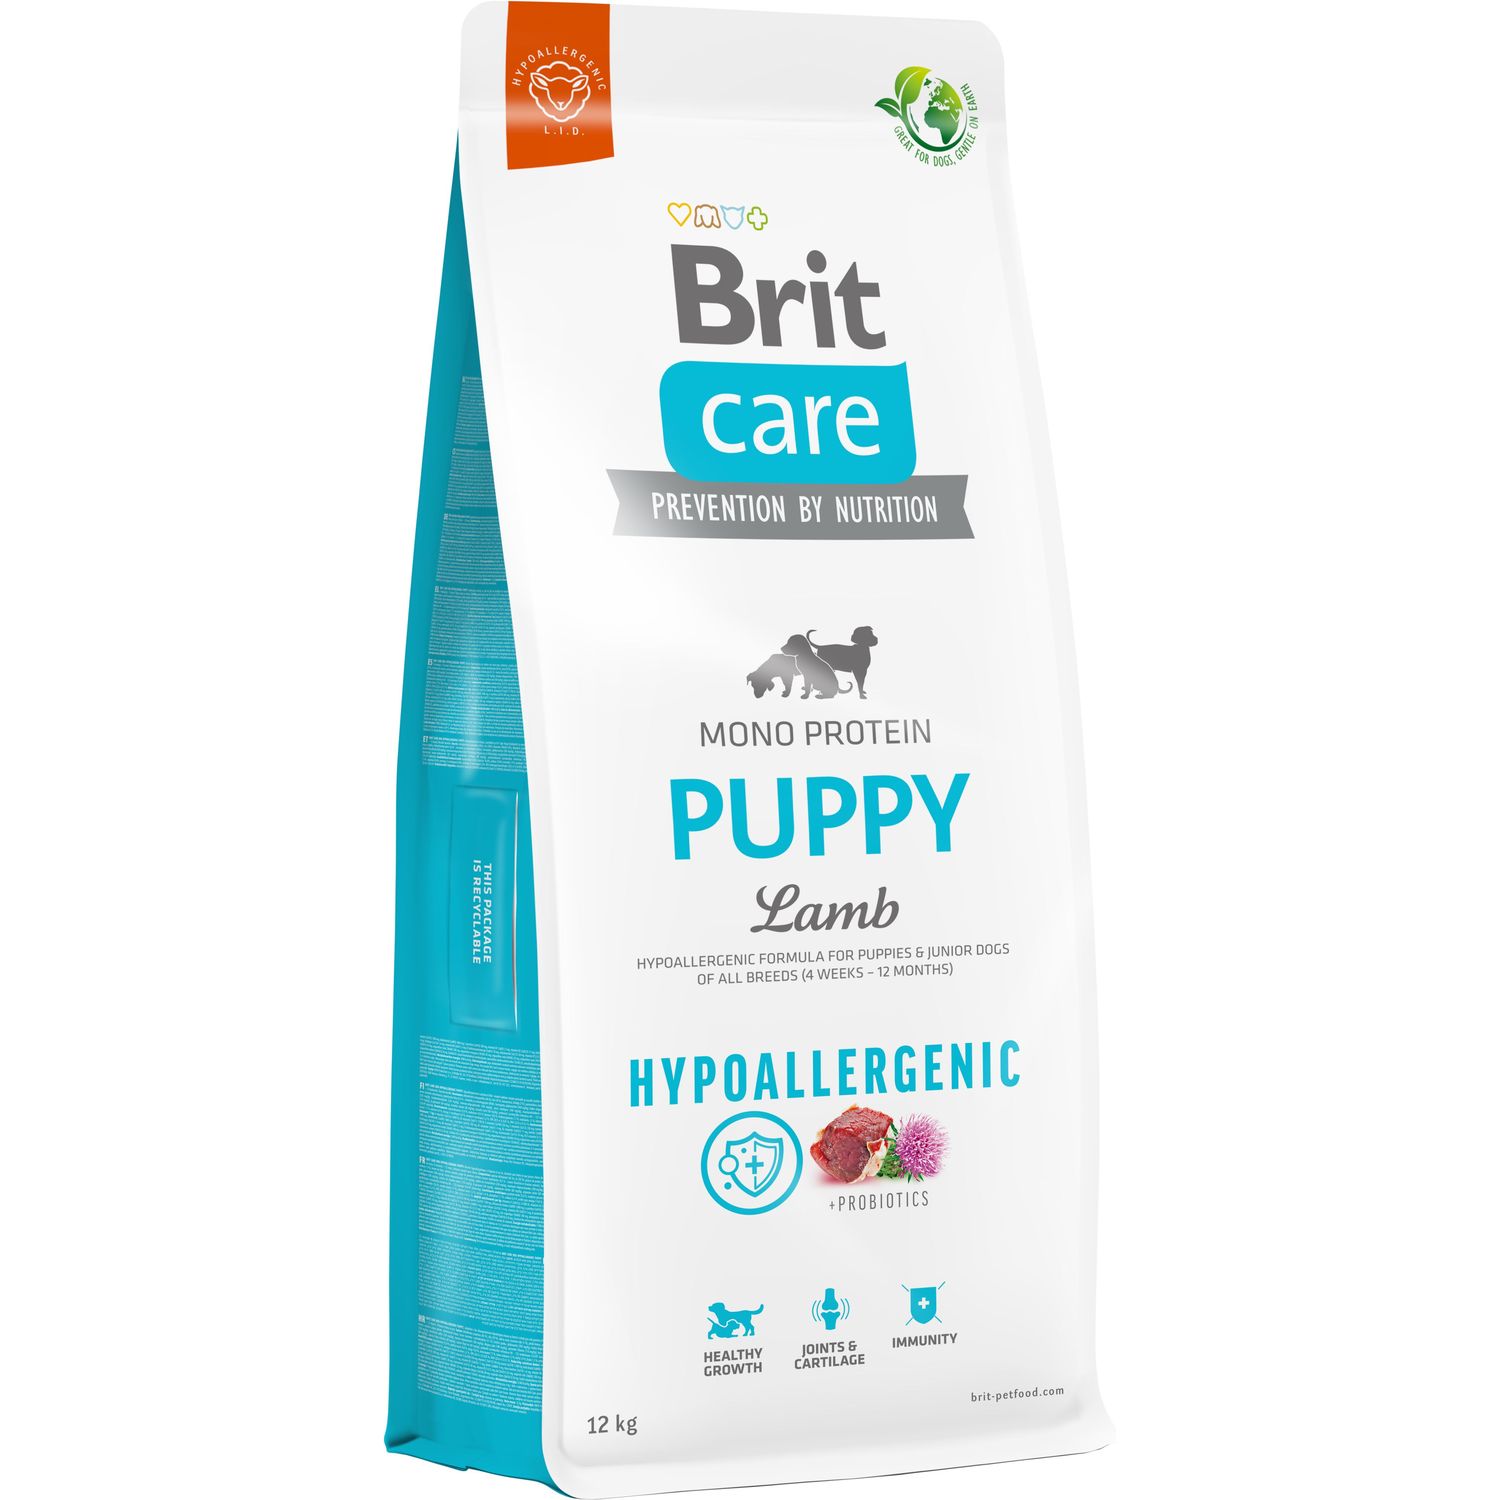 Сухой корм для щенков Brit Care Dog Hypoallergenic Puppy, гипоаллергенный, с ягненком, 12 кг - фото 1